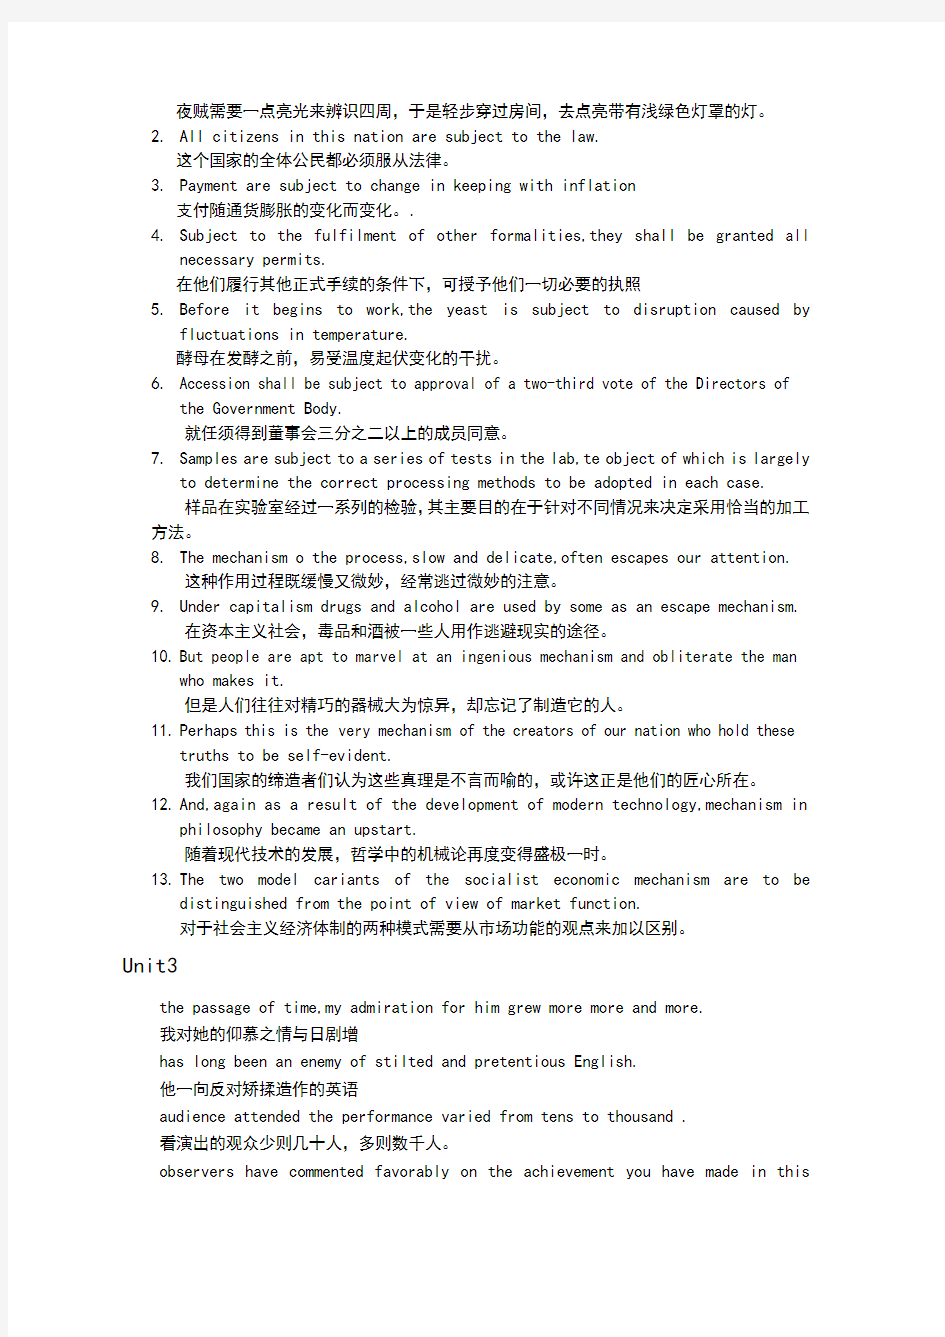 英汉互译翻译和实践技巧1_12单元参考答案解析